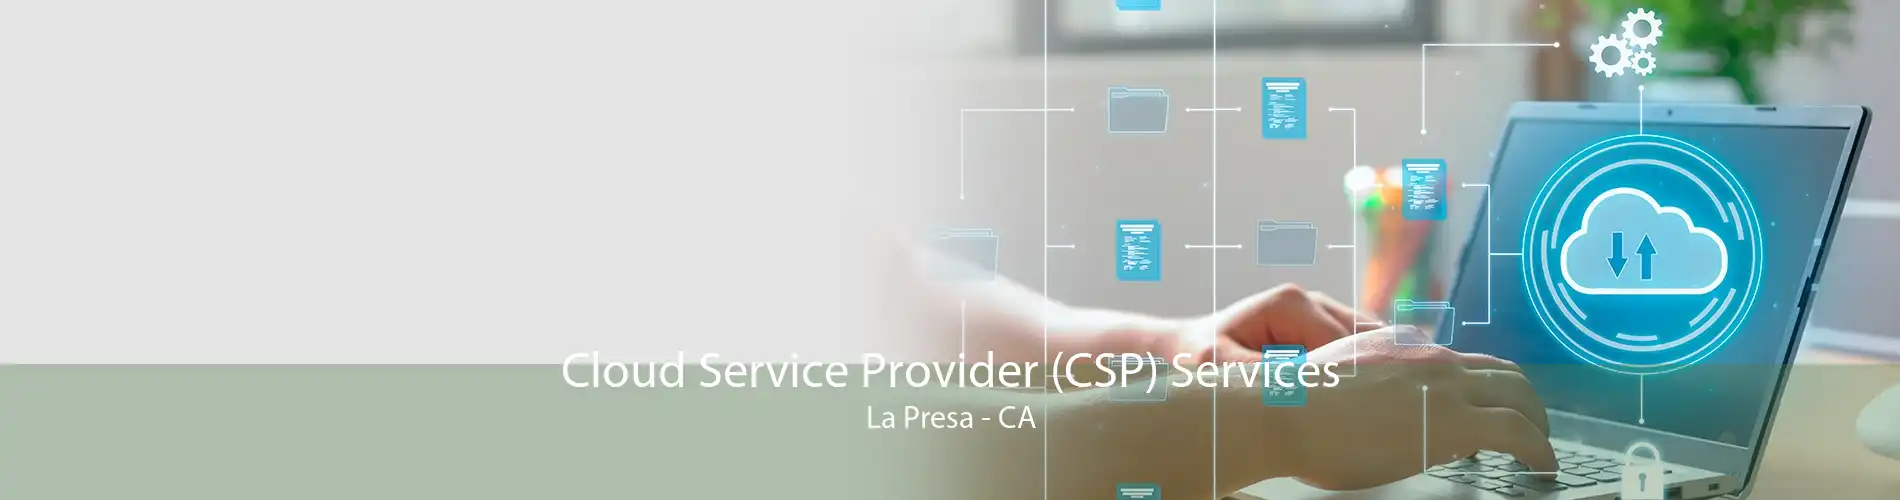 Cloud Service Provider (CSP) Services La Presa - CA